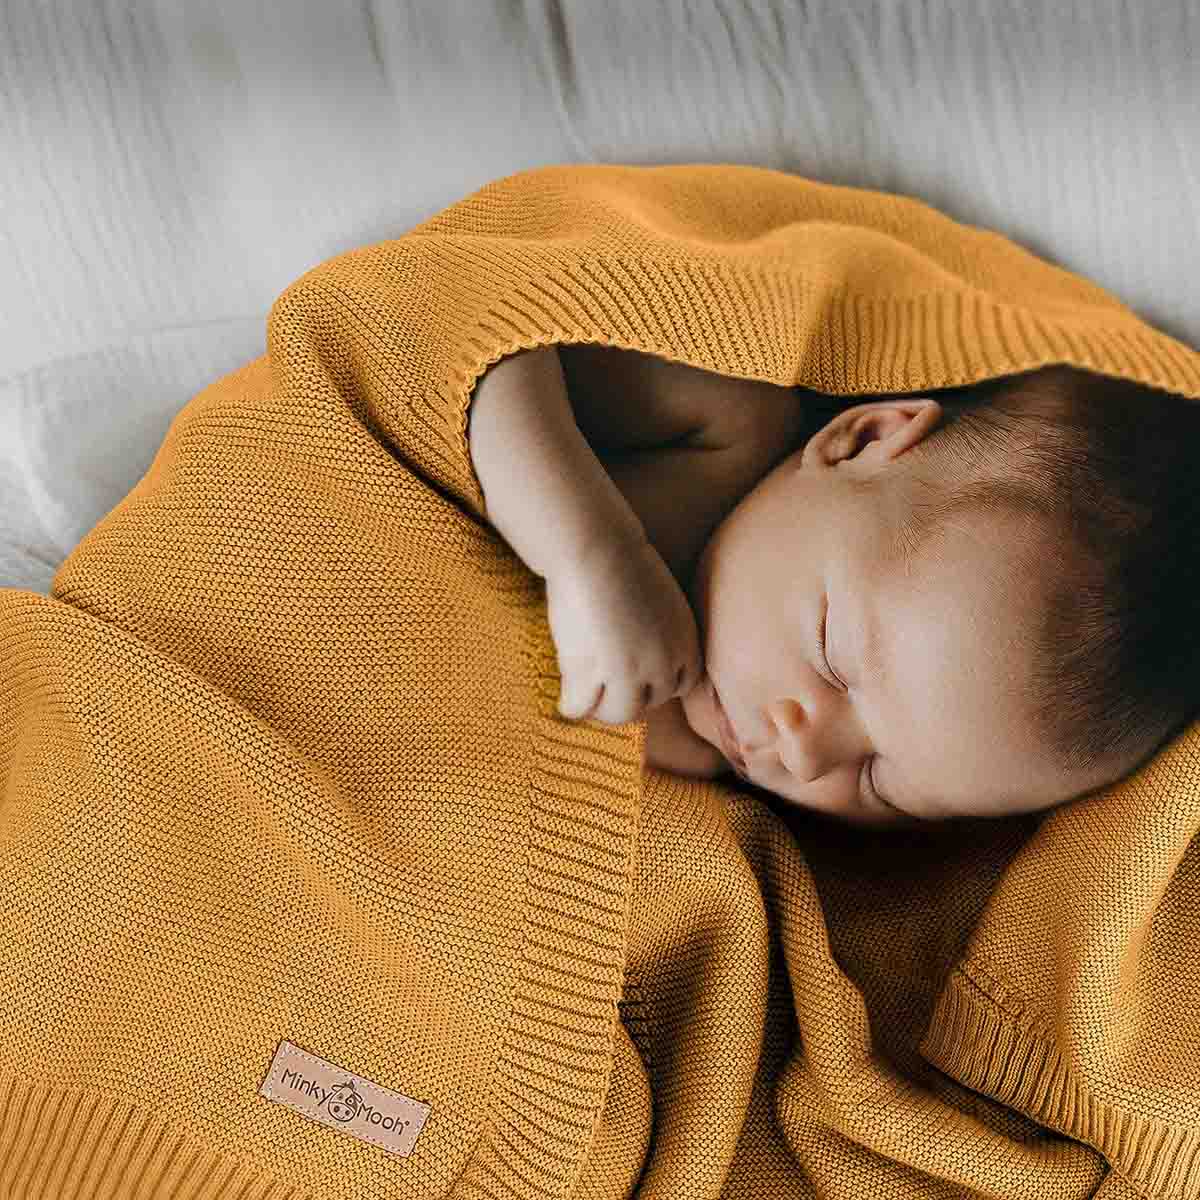 Neugeborenes schläft friedlich eingehüllt in eine dunkel-gelbe Bio-Baumwolldecke.